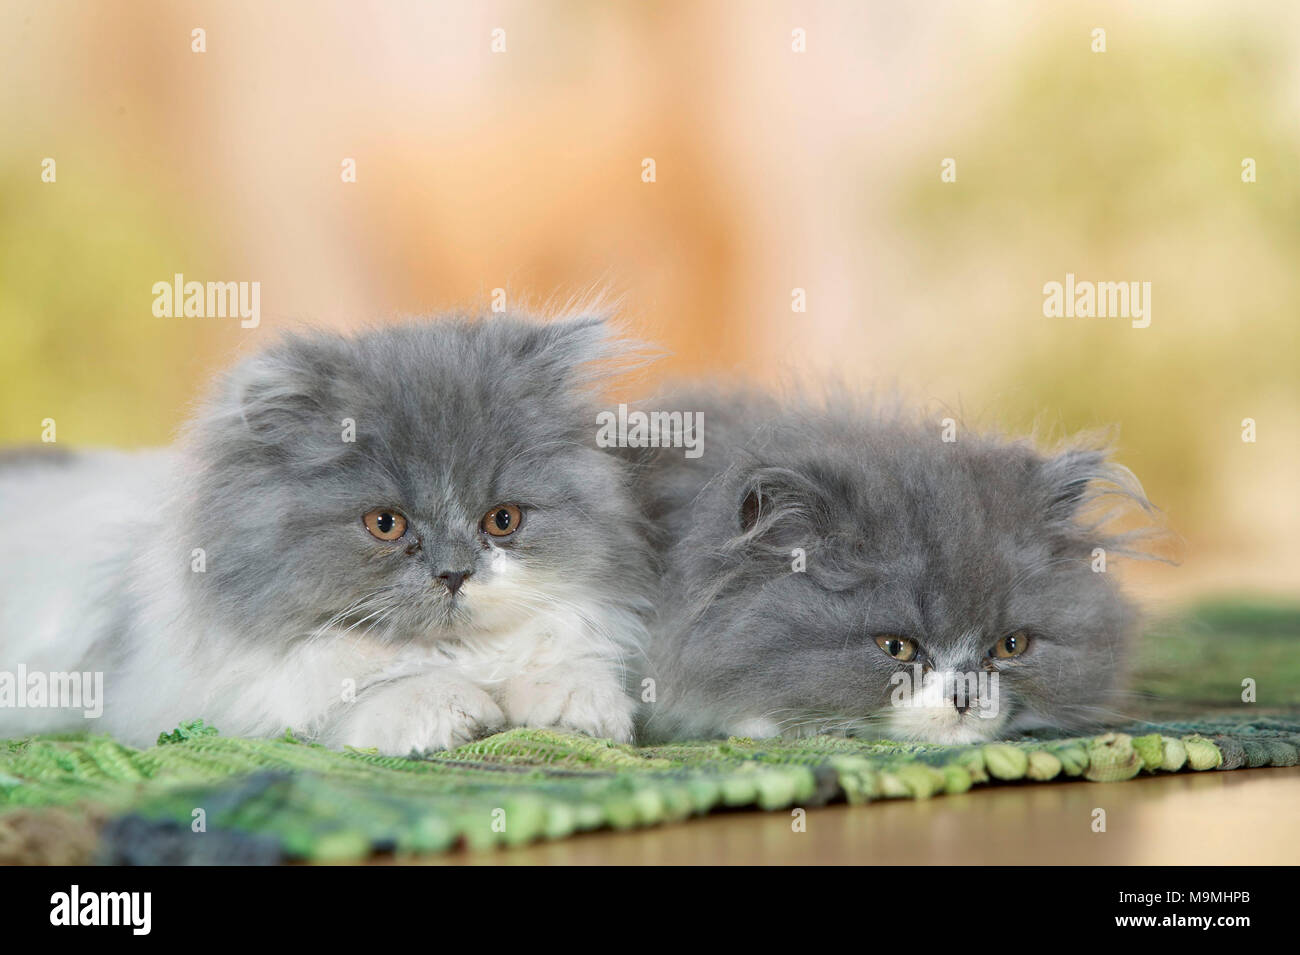 El persa Cat. Dos cachorros acostado sobre una alfombra. Alemania. Foto de stock